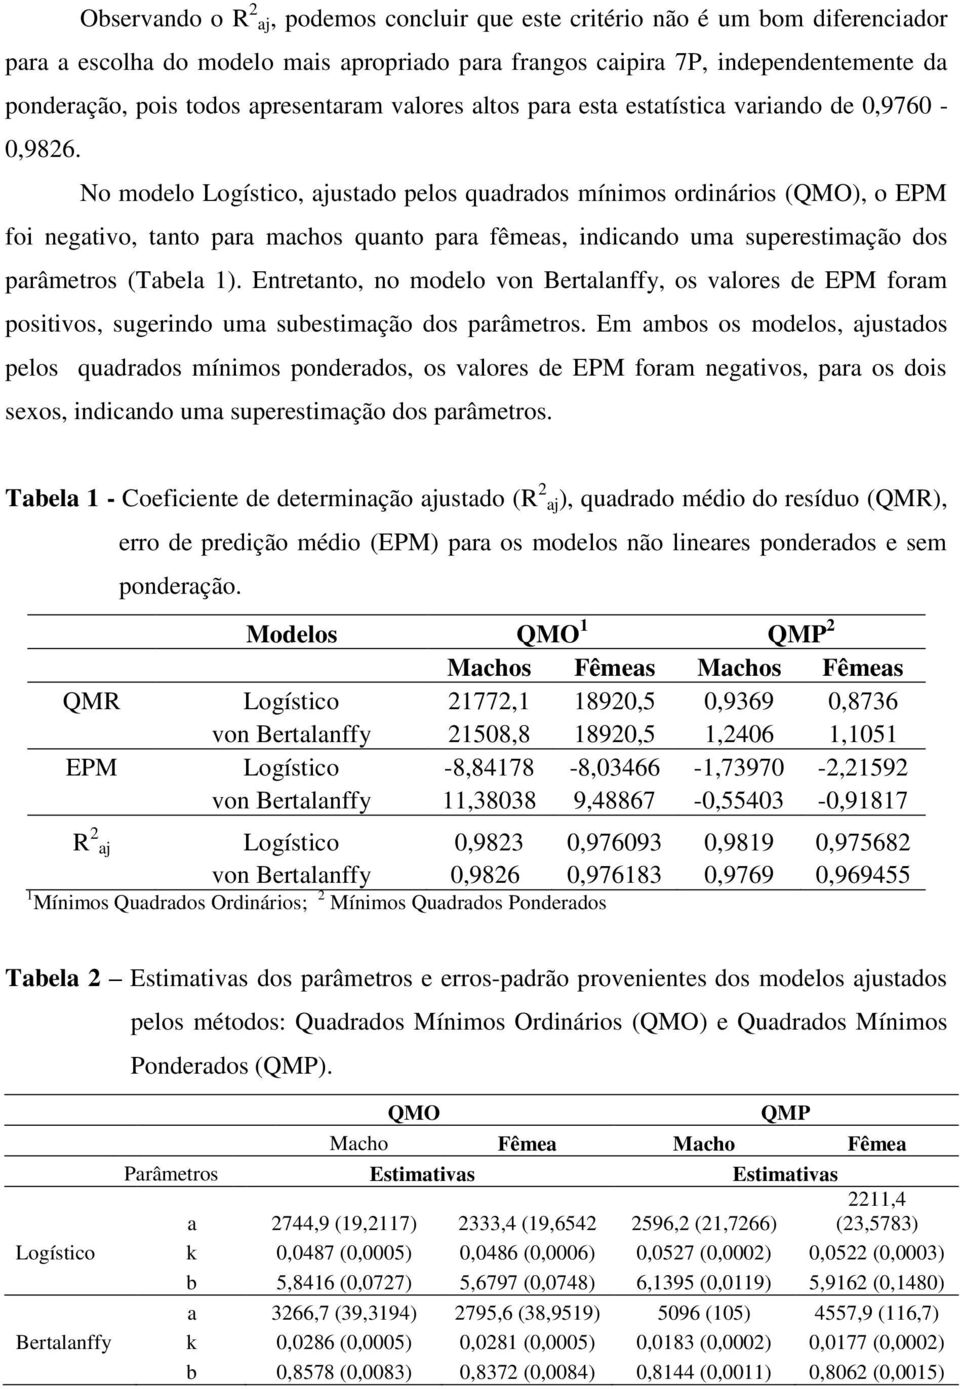 No modelo Logístico, ajustado pelos quadrados mínimos ordinários (QMO), o EPM foi negativo, tanto para machos quanto para fêmeas, indicando uma superestimação dos parâmetros (Tabela 1).